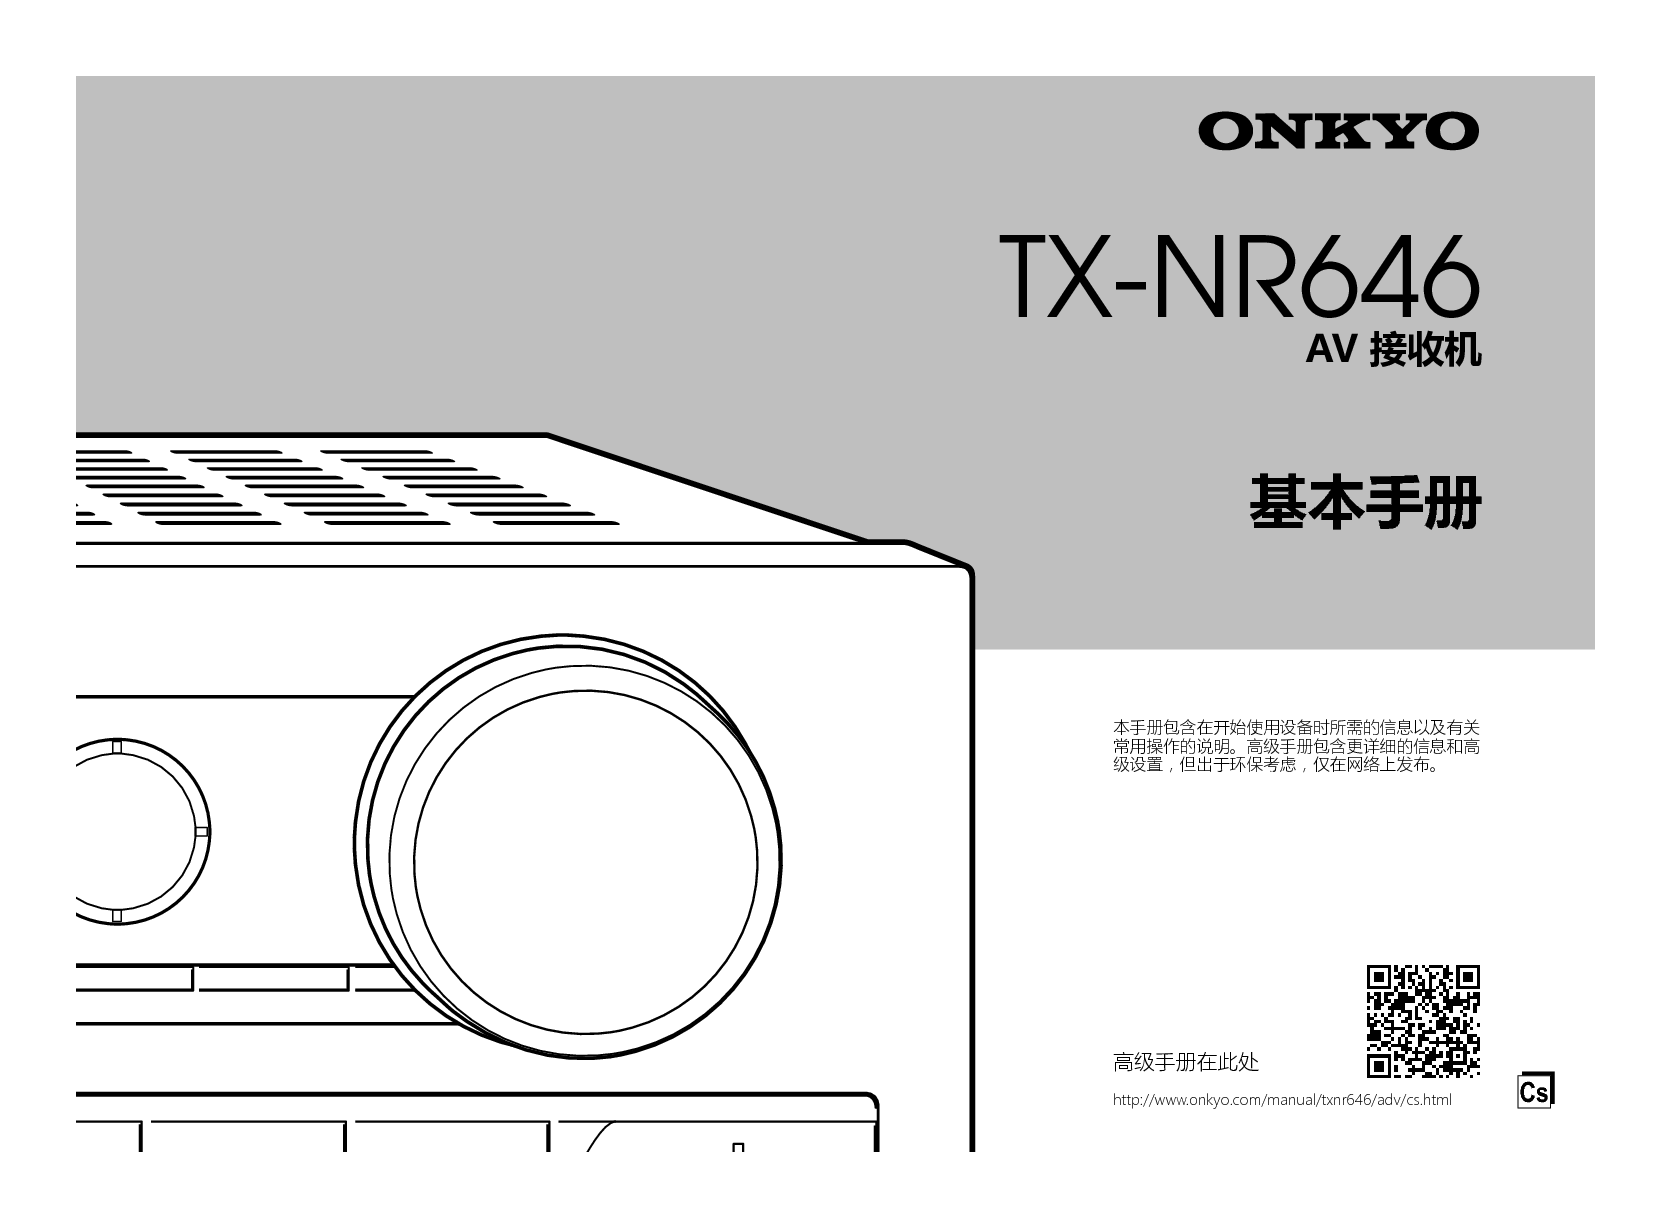 安桥 Onkyo TX-NR646 基础使用手册 封面